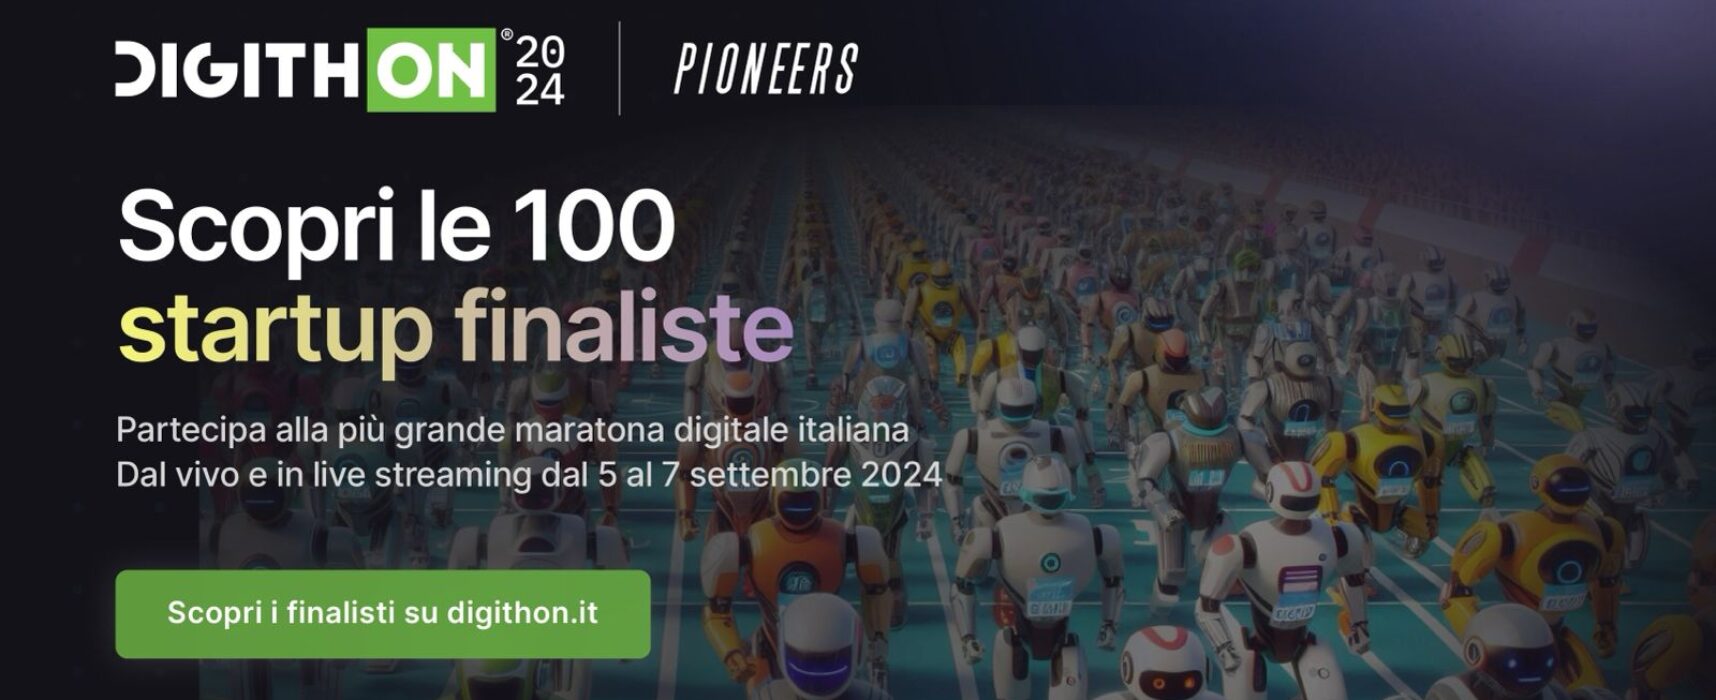 DigithON: ufficializzate le cento startup finaliste della nona edizione